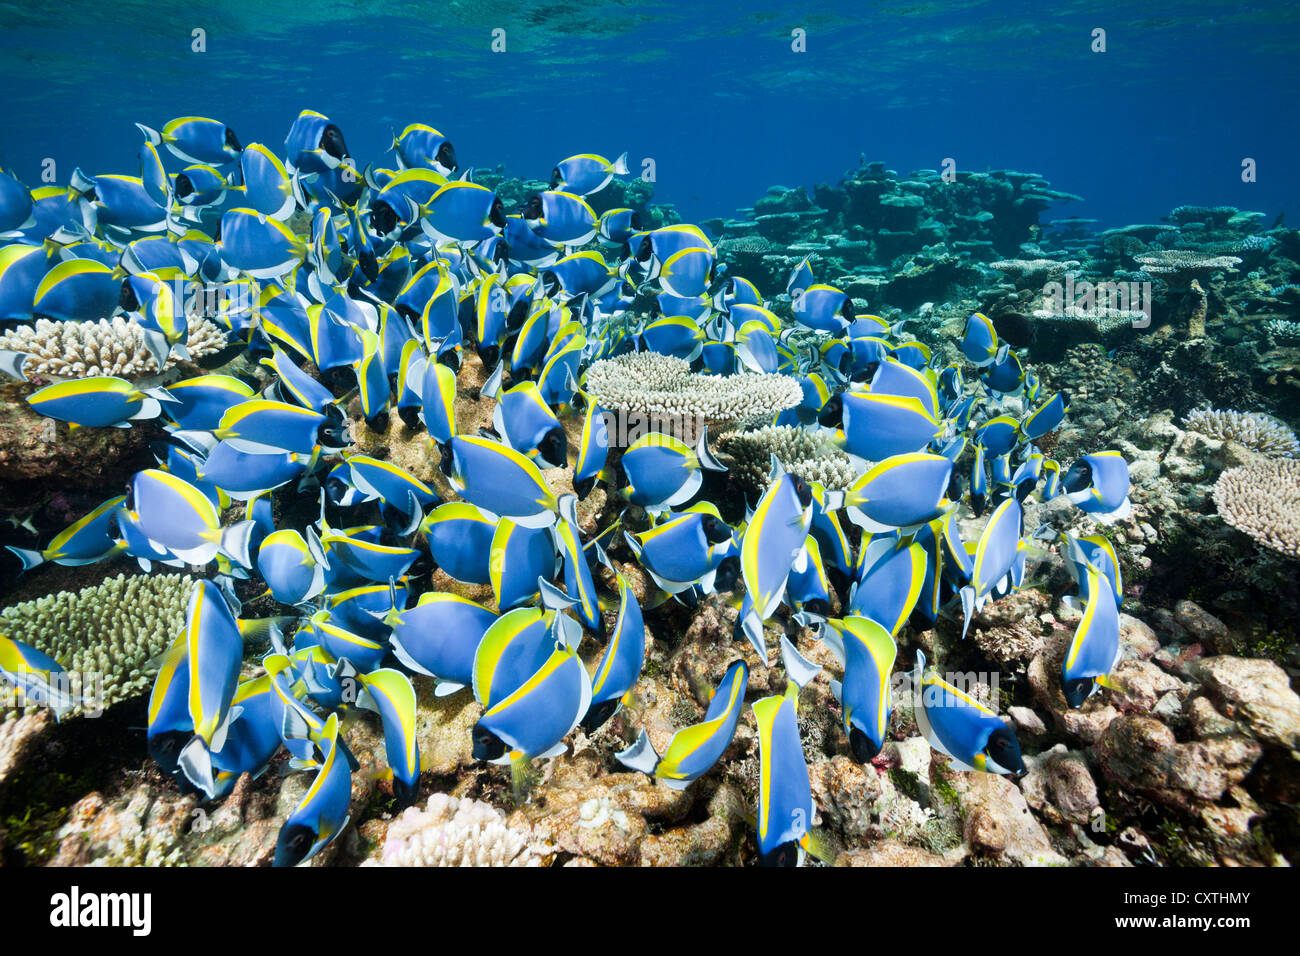 Banc de bleu poudre Tang, Acanthurus leucosternon, Thaa Atoll, Maldives Banque D'Images